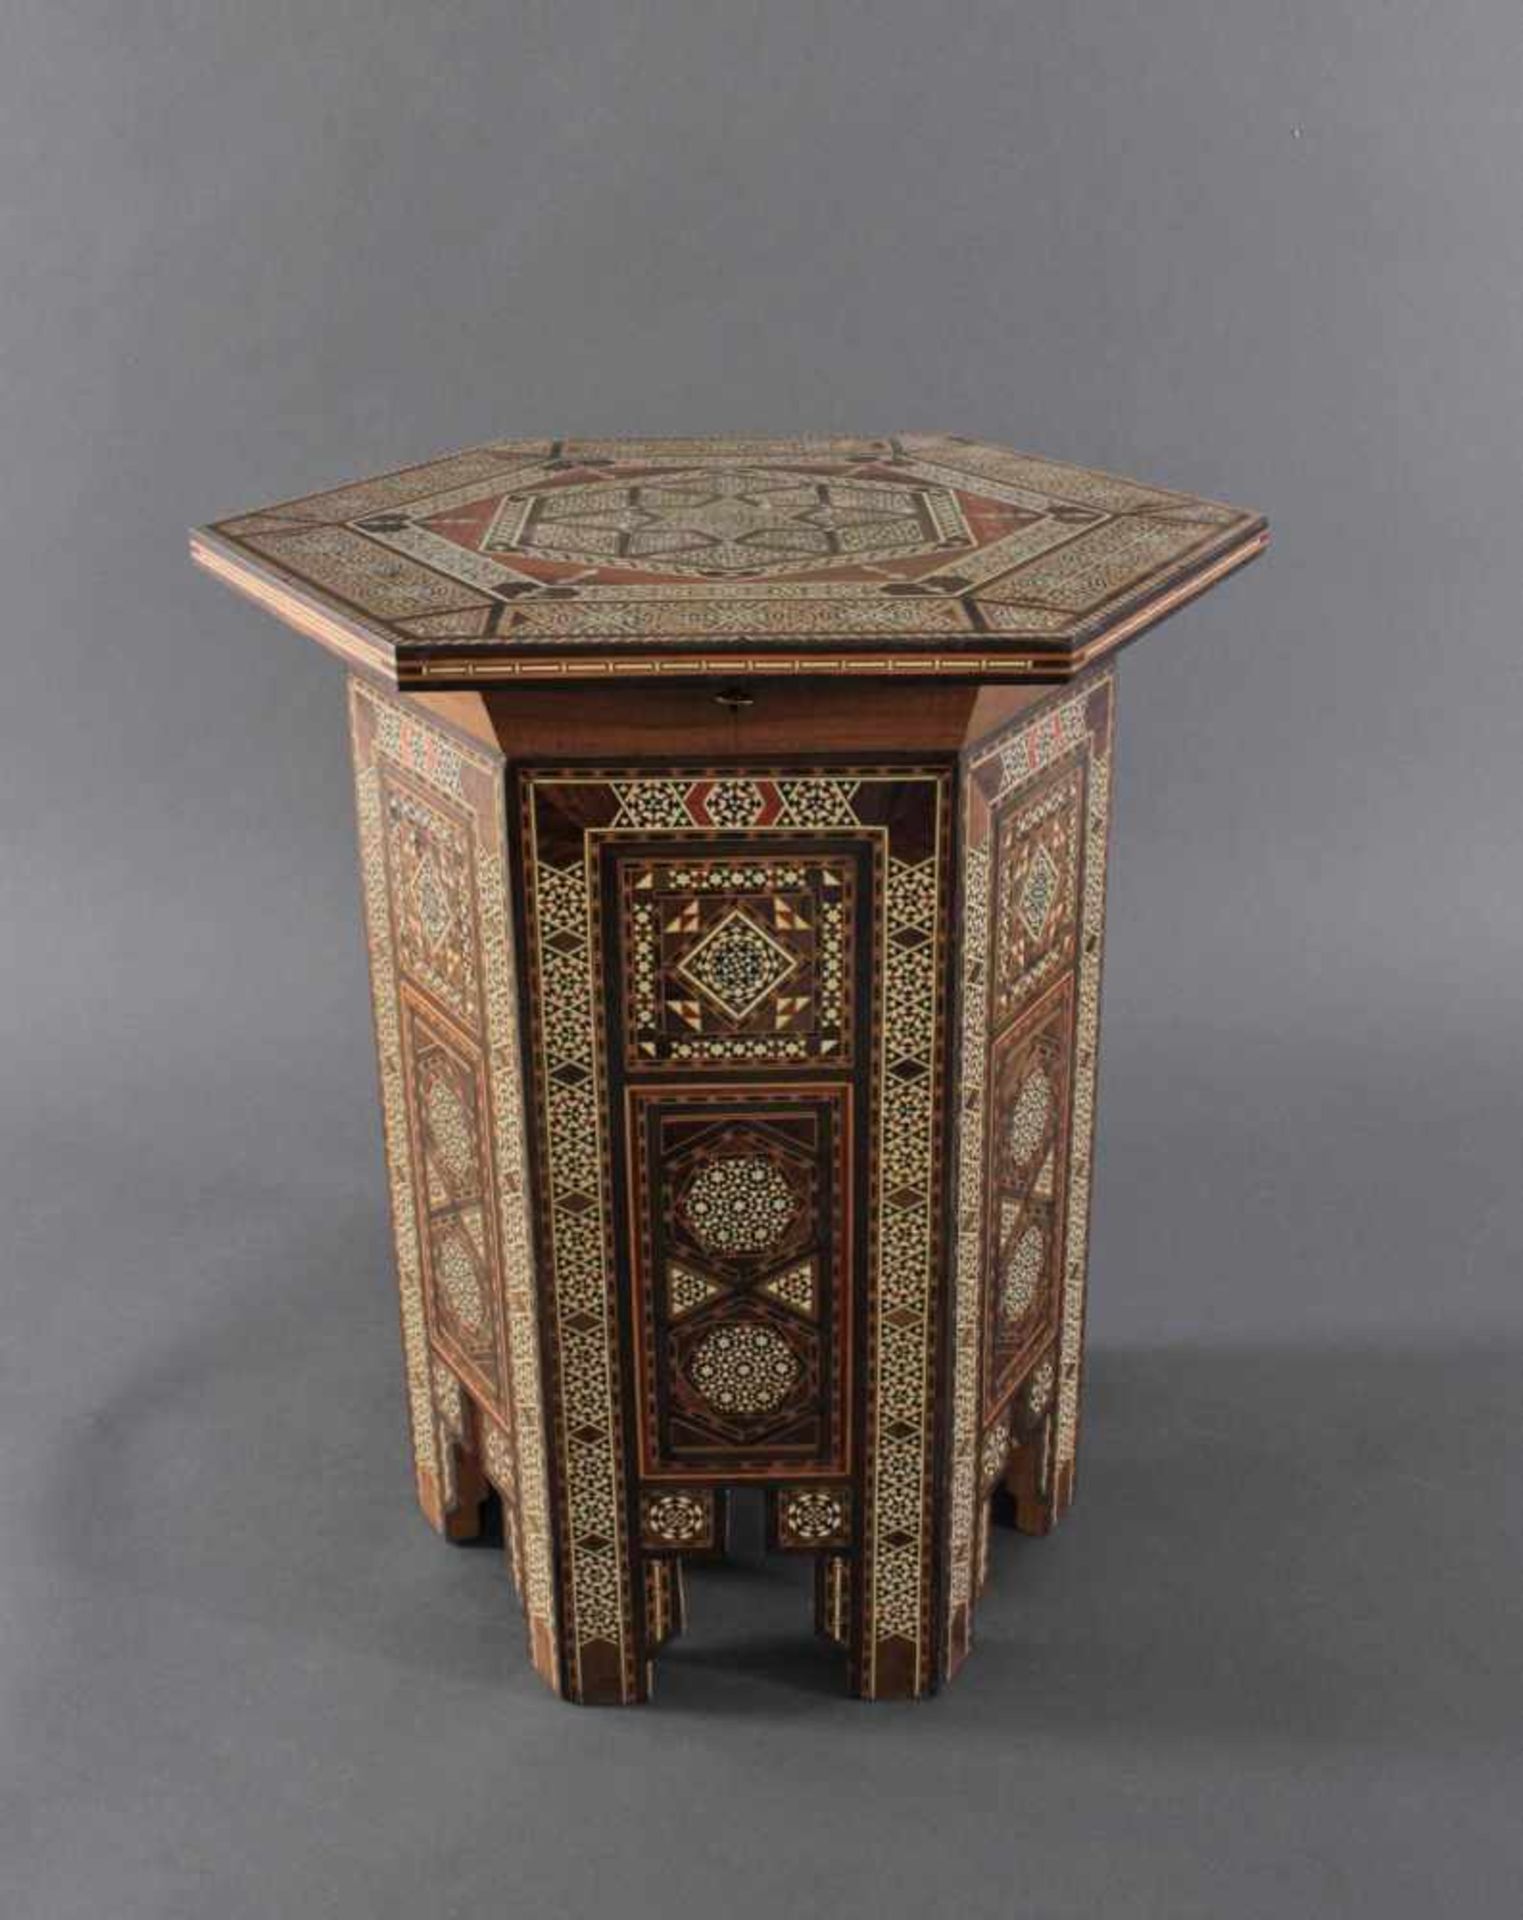 Orientalischer BeistelltischTropenholz, sechsseitige Deckplatte klappbar, abschließbar, reiche